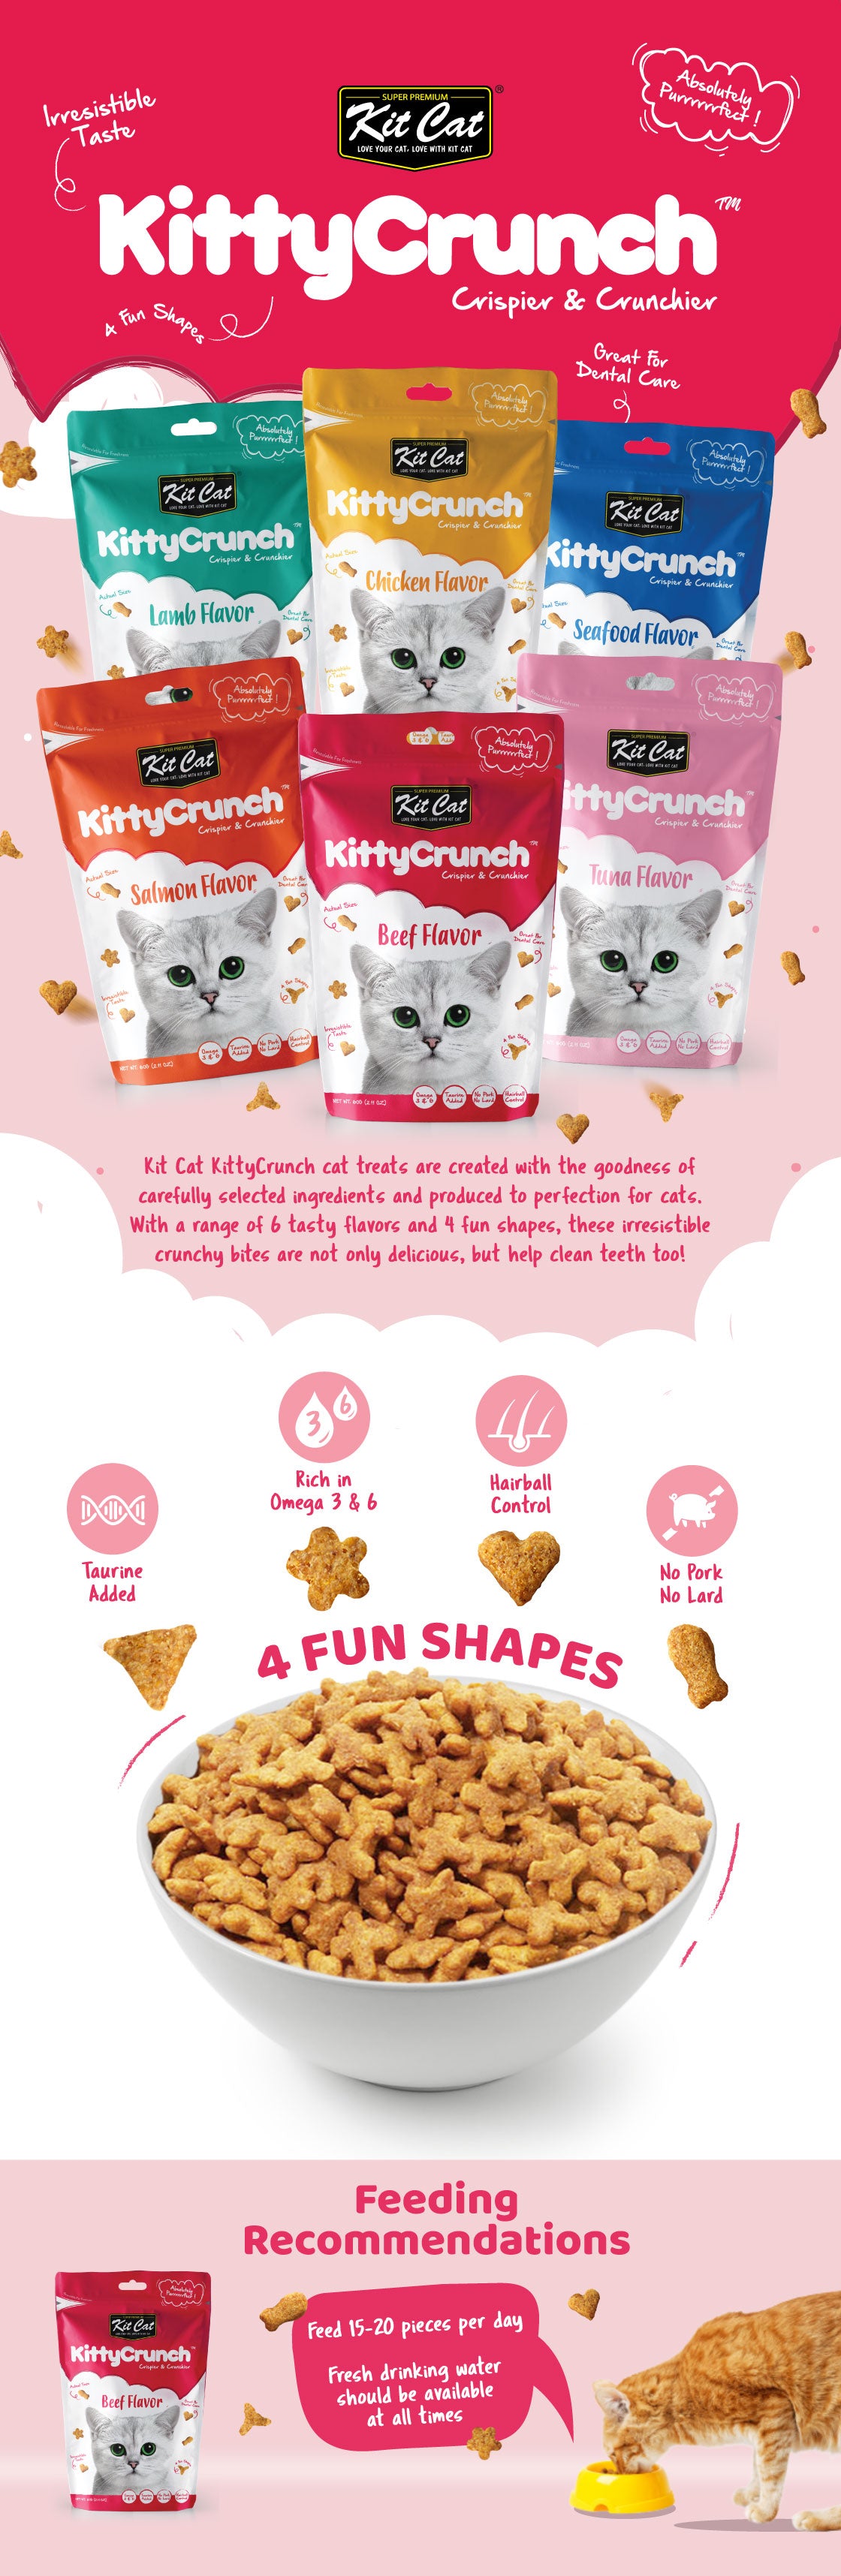 [CTN OF 12] Kit Cat Kitty Crunch Cat Treat - Lamb (12x60g)